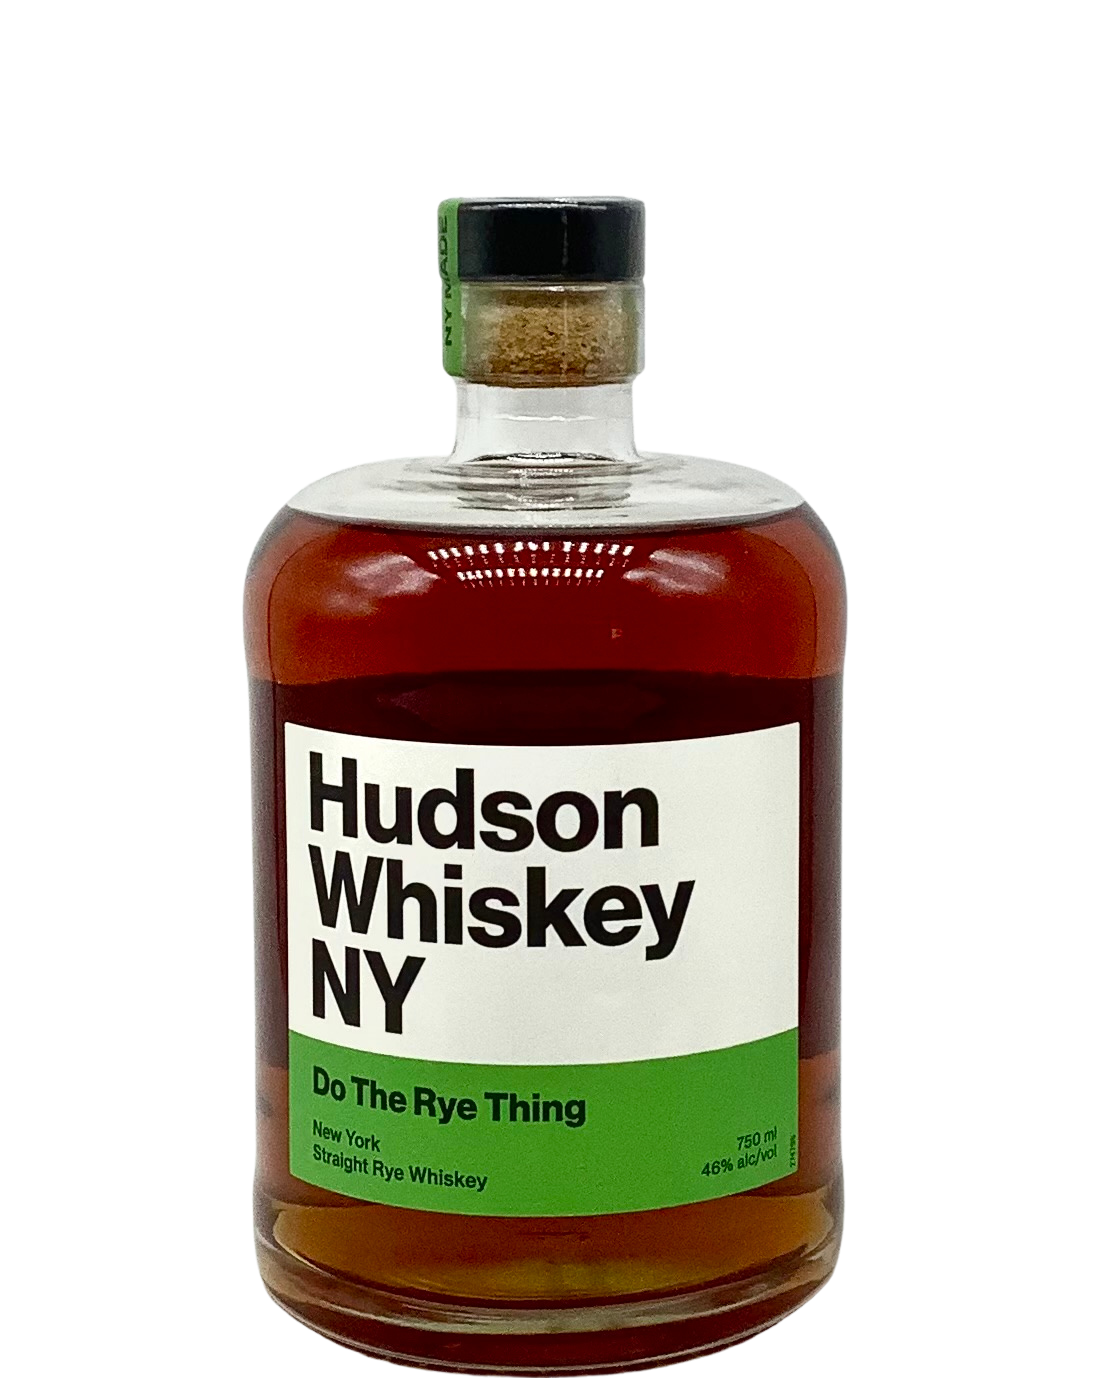 Hudson Whiskey (Tuthilltown Spirits) "Do the Rye Thing" New York Straight Rye Whiskey 750ml